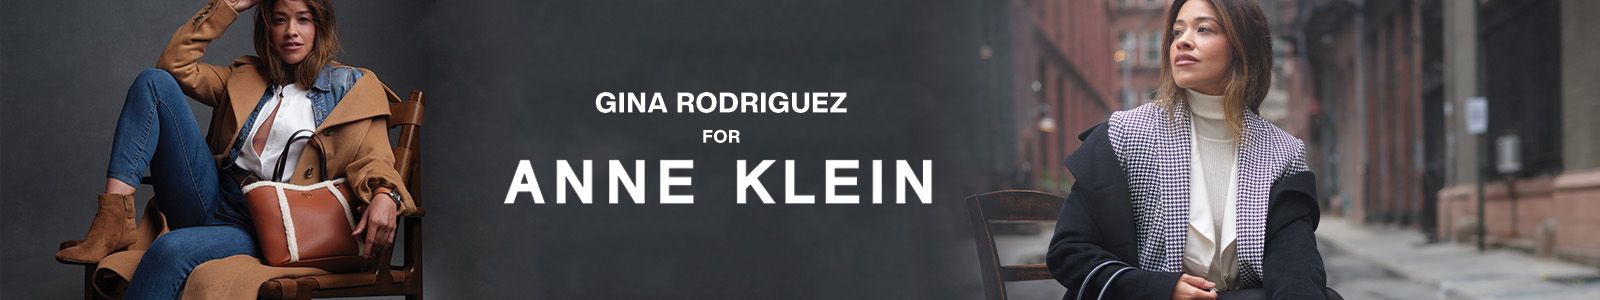 Gina Rodriguez for Anne Klein